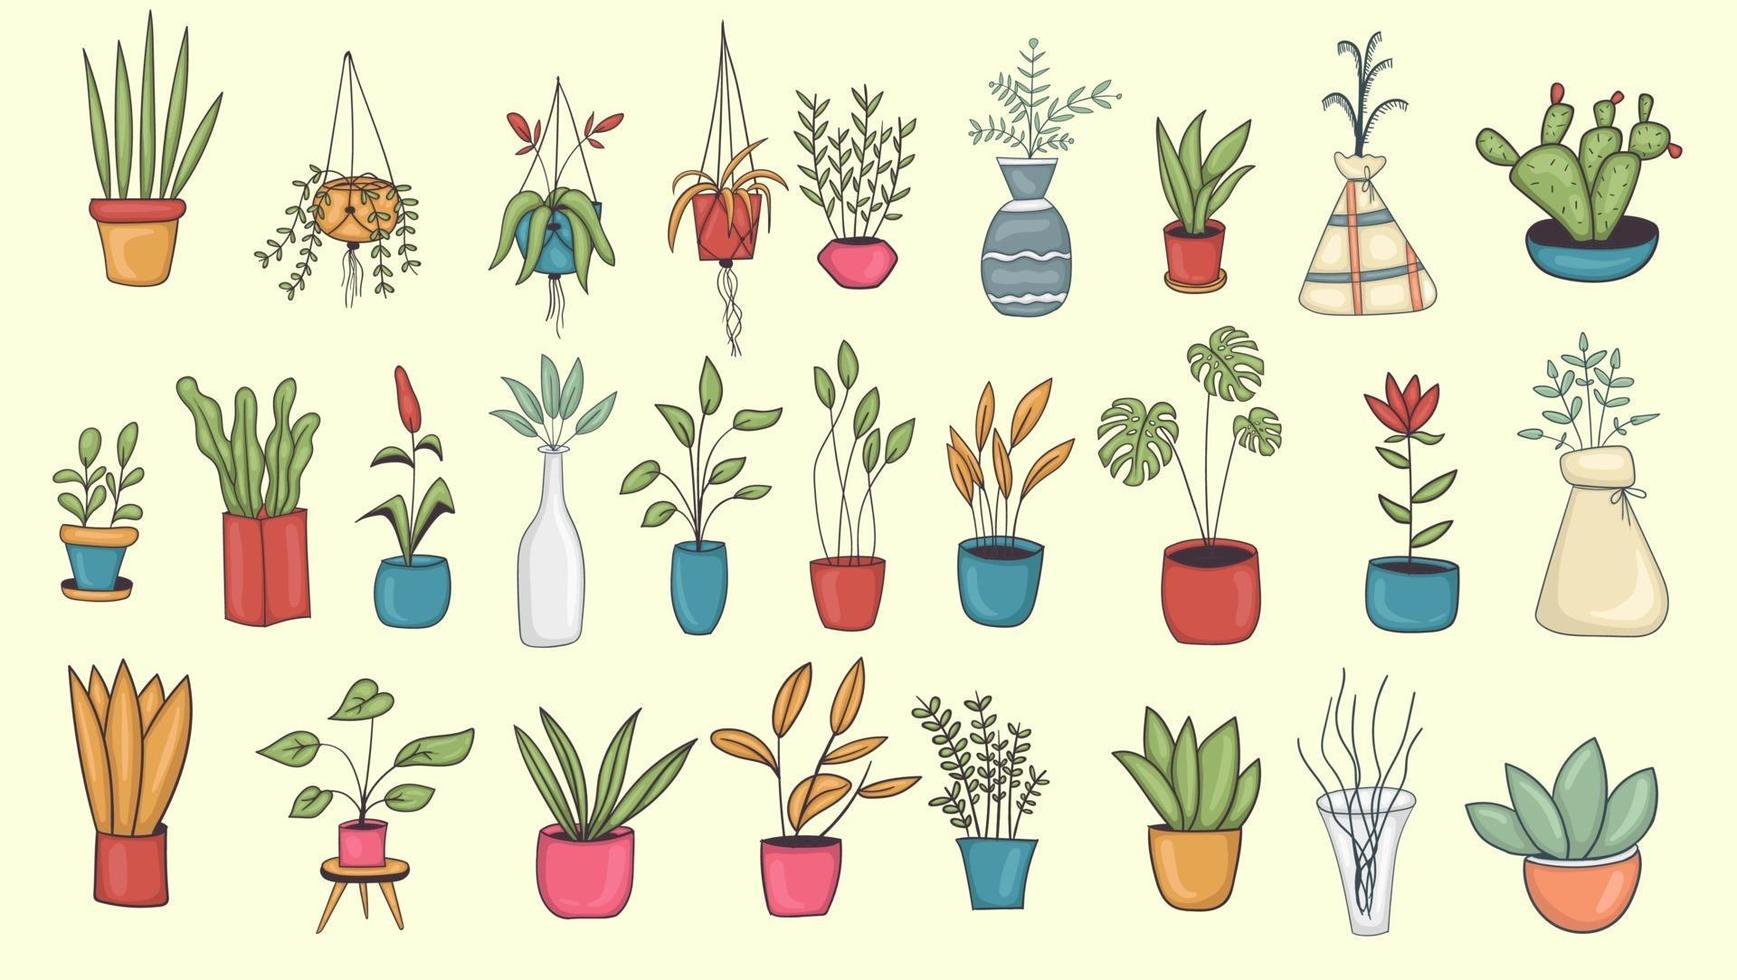 grande conjunto de ilustrações coloridas de plantas caseiras desenhadas à mão vetor